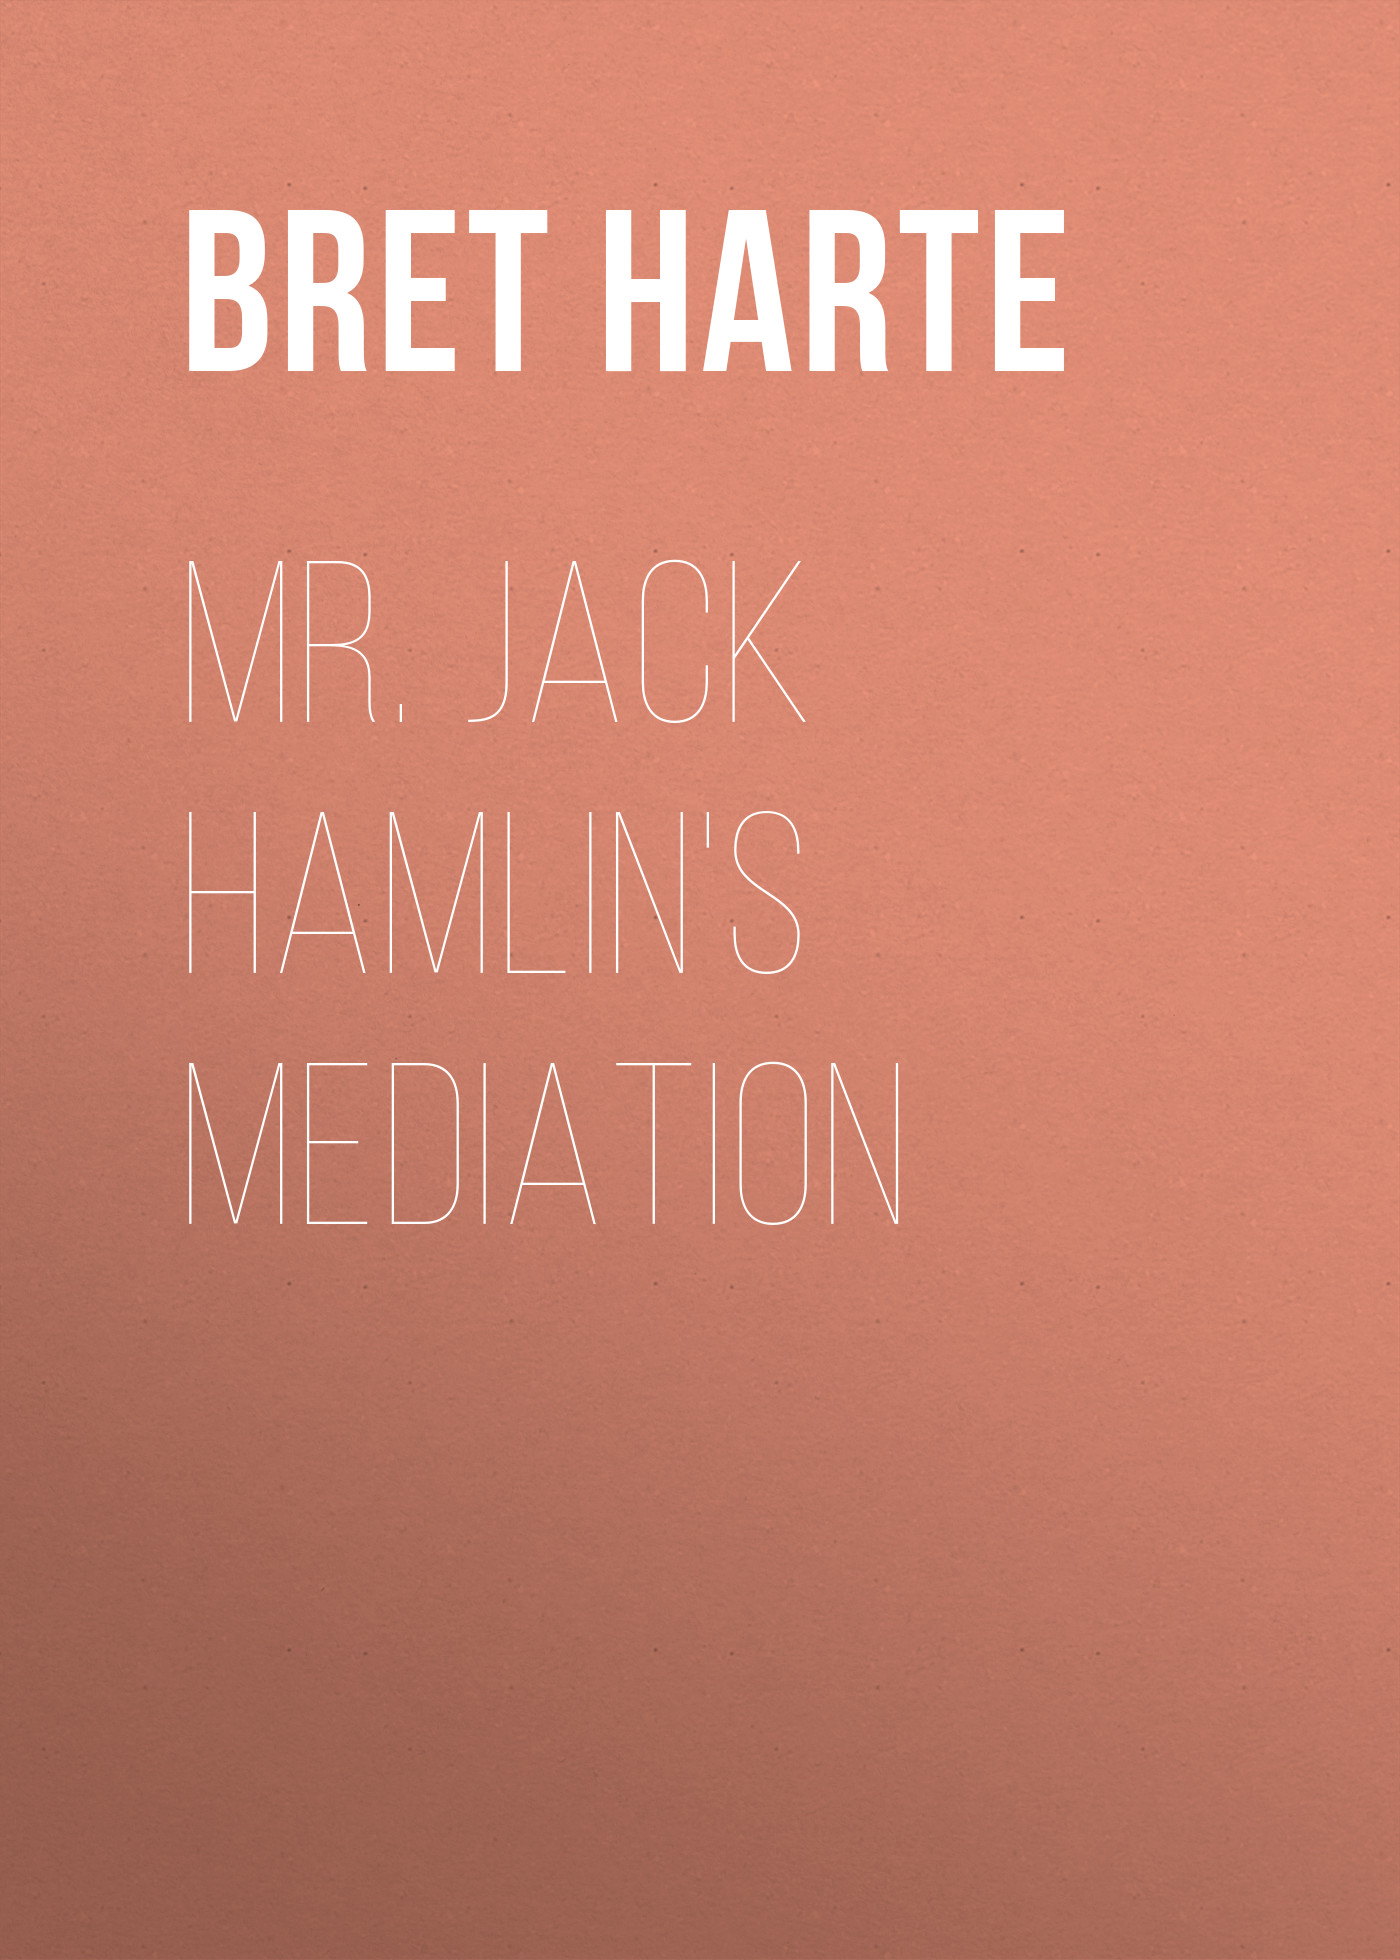 Книга Mr. Jack Hamlin's Mediation из серии , созданная Bret Harte, может относится к жанру Зарубежная фантастика, Литература 19 века, Зарубежная старинная литература, Зарубежная классика. Стоимость электронной книги Mr. Jack Hamlin's Mediation с идентификатором 36322220 составляет 0 руб.